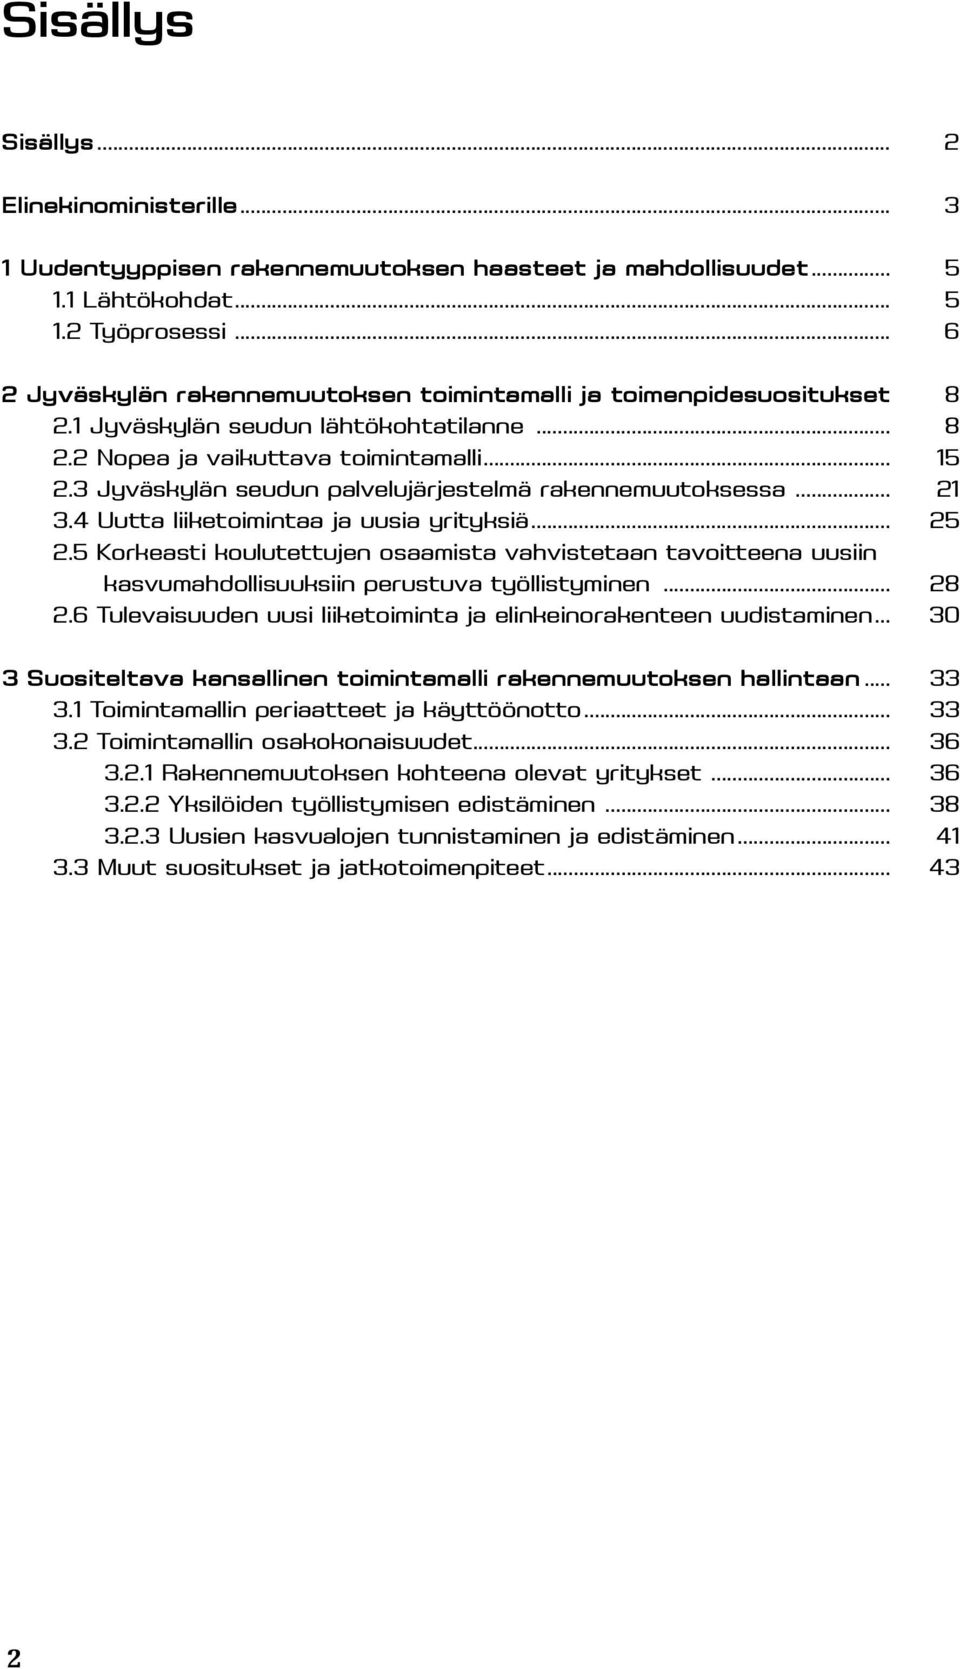 3 Jyväskylän seudun palvelujärjestelmä rakennemuutoksessa... 21 3.4 Uutta liiketoimintaa ja uusia yrityksiä... 25 2.